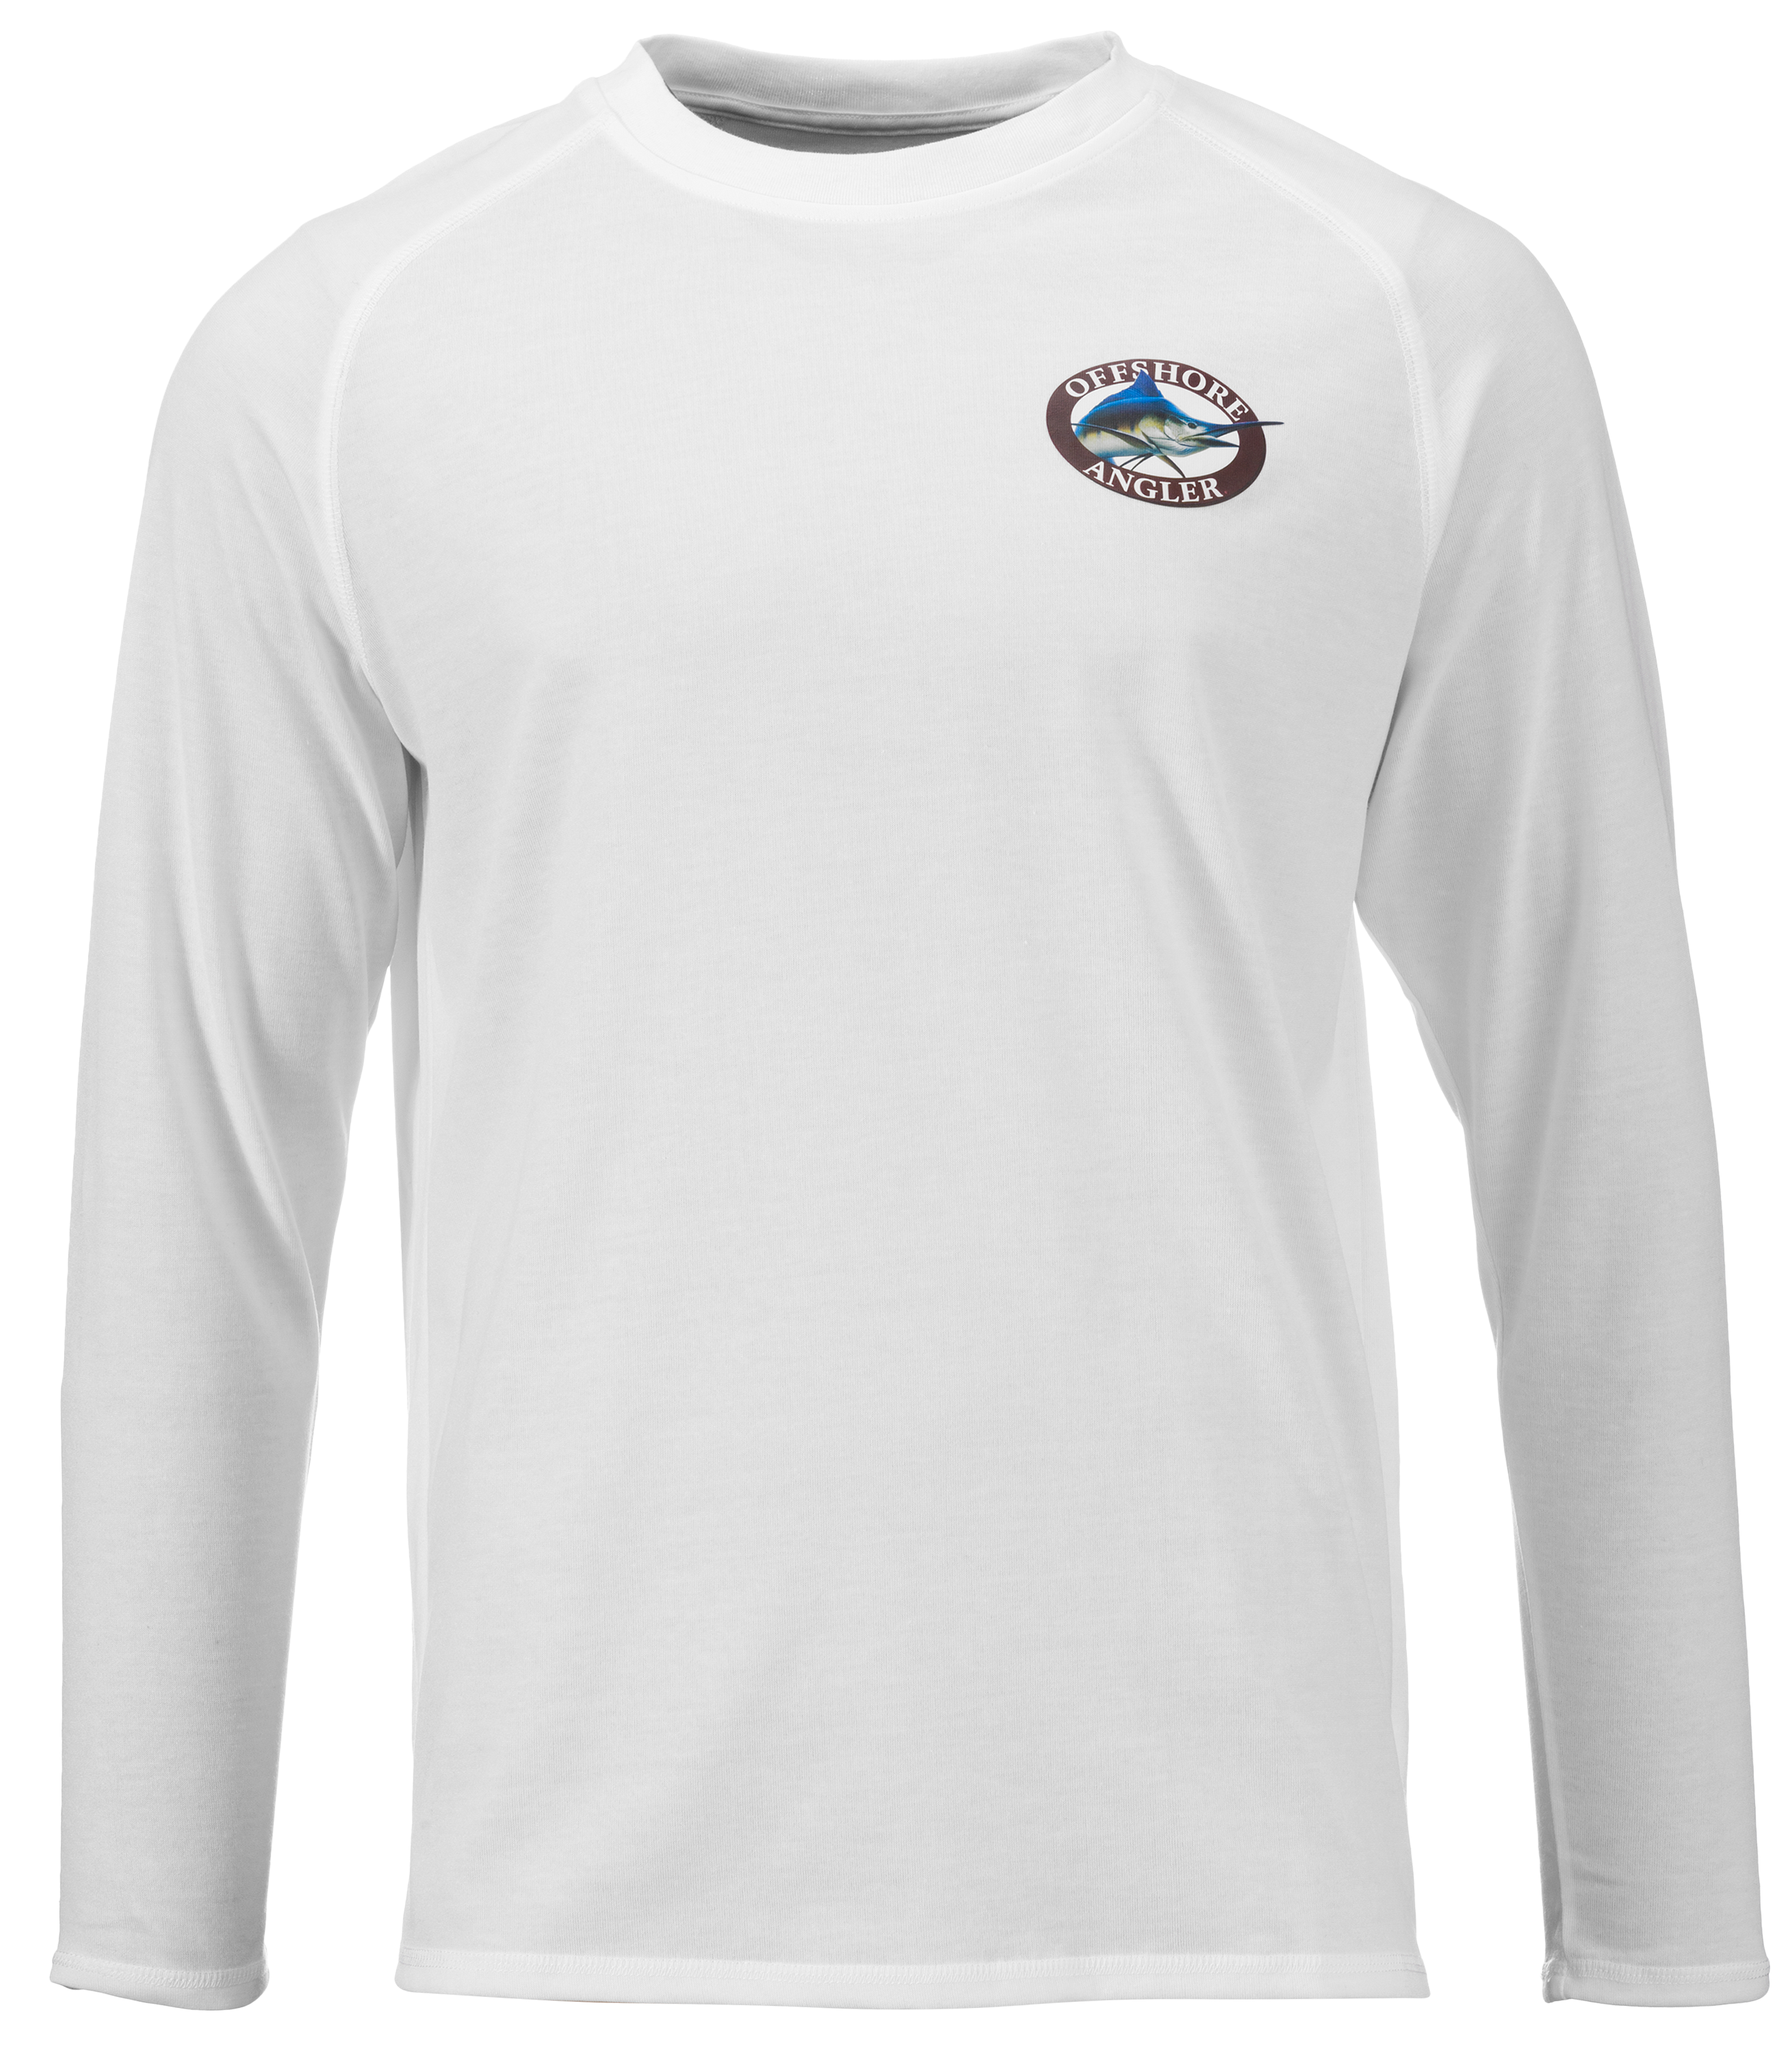 Offshore Angler Performance Long-Sleeve T-Shirt for Men | Bass Pro Shops